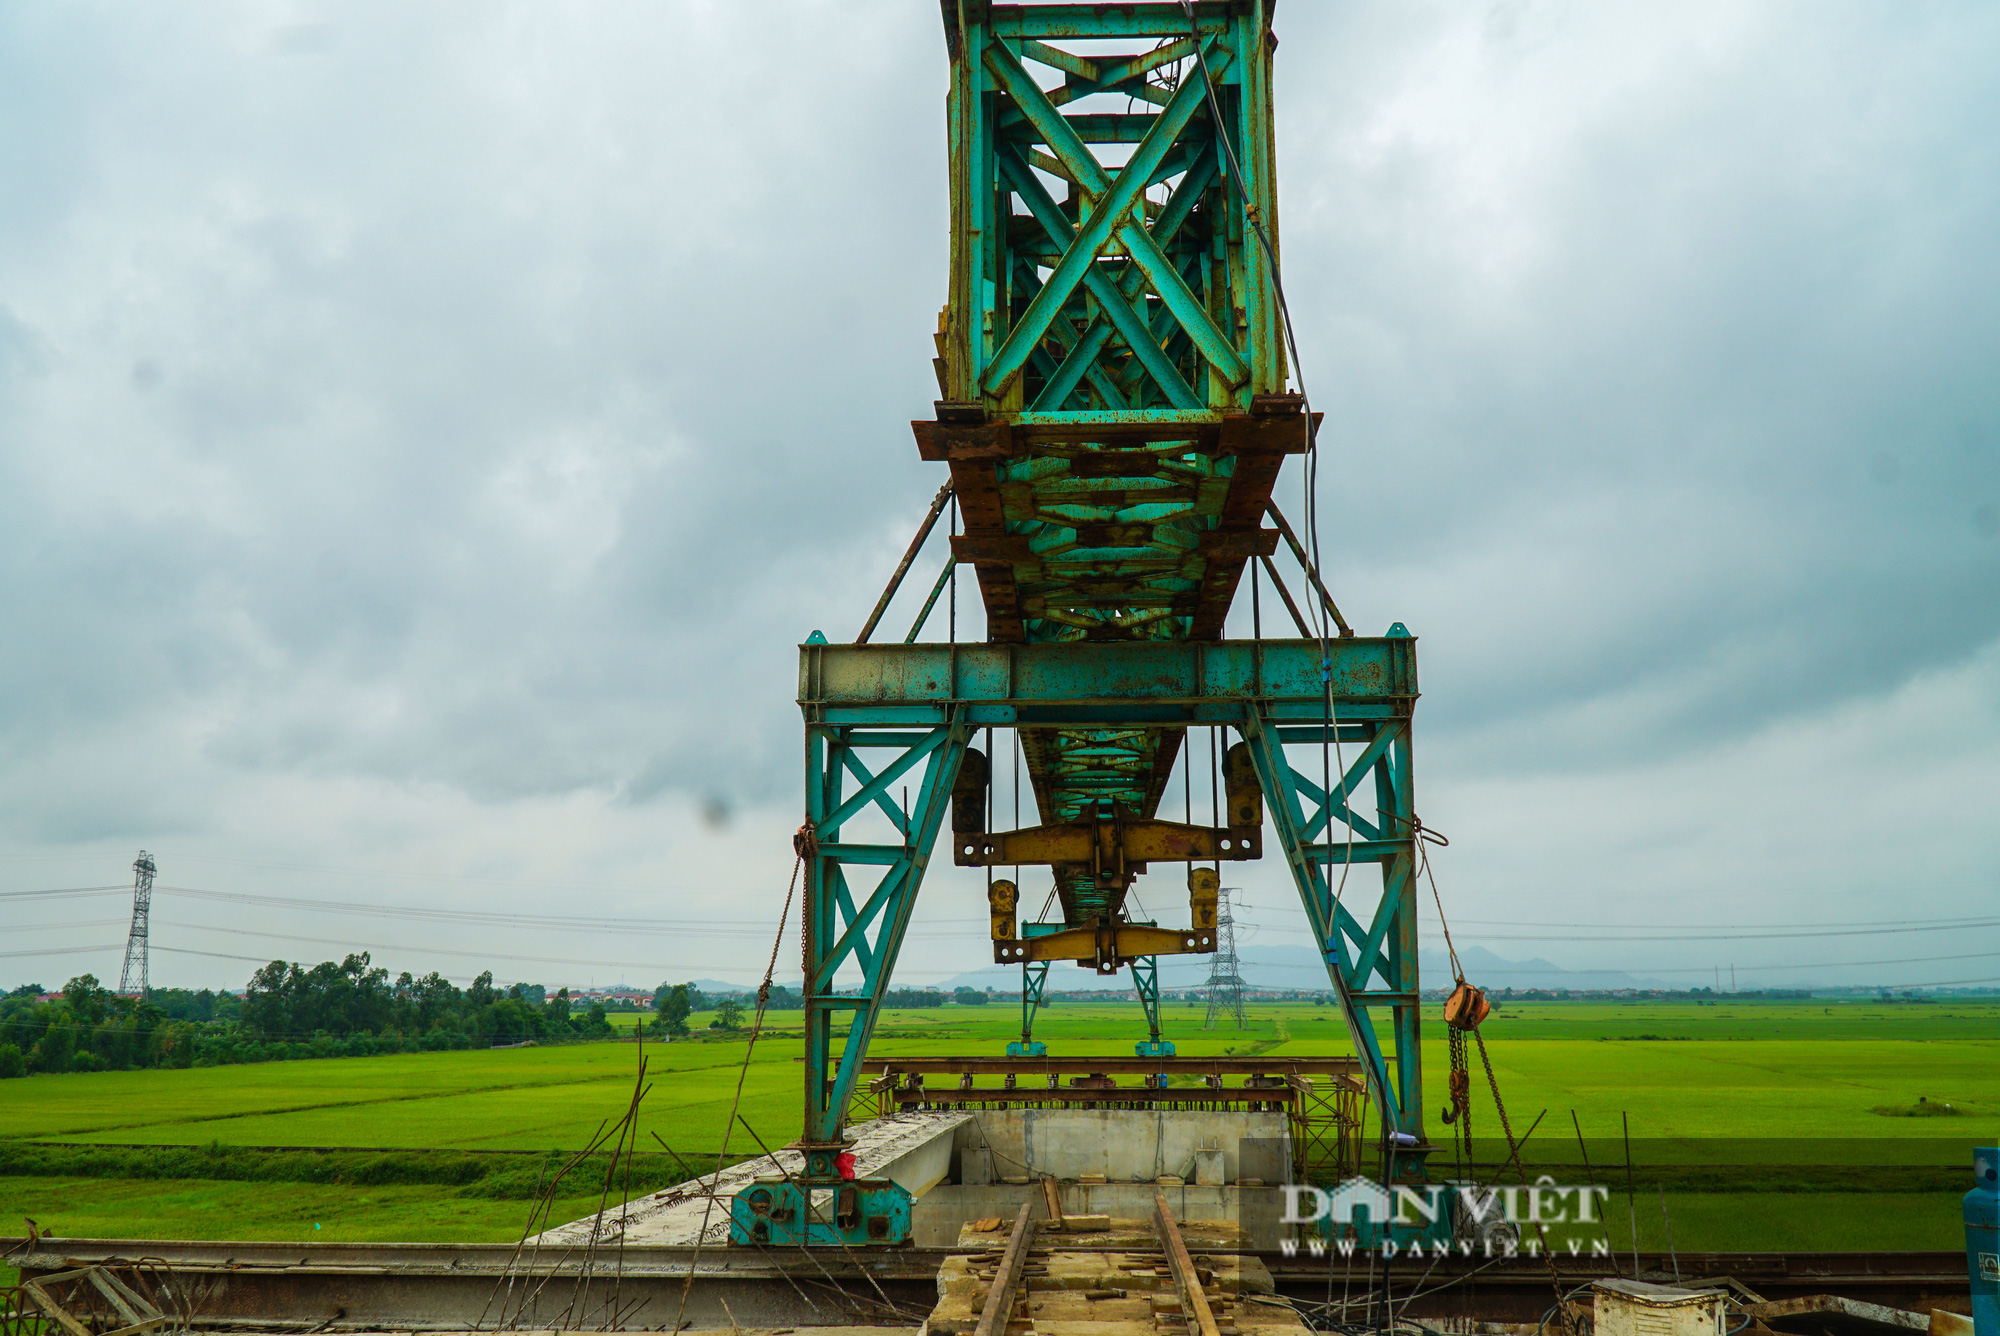 Chuẩn bị hoàn thiện cây cầu vượt sông nối liền Hà Nội - Bắc Giang - Ảnh 12.